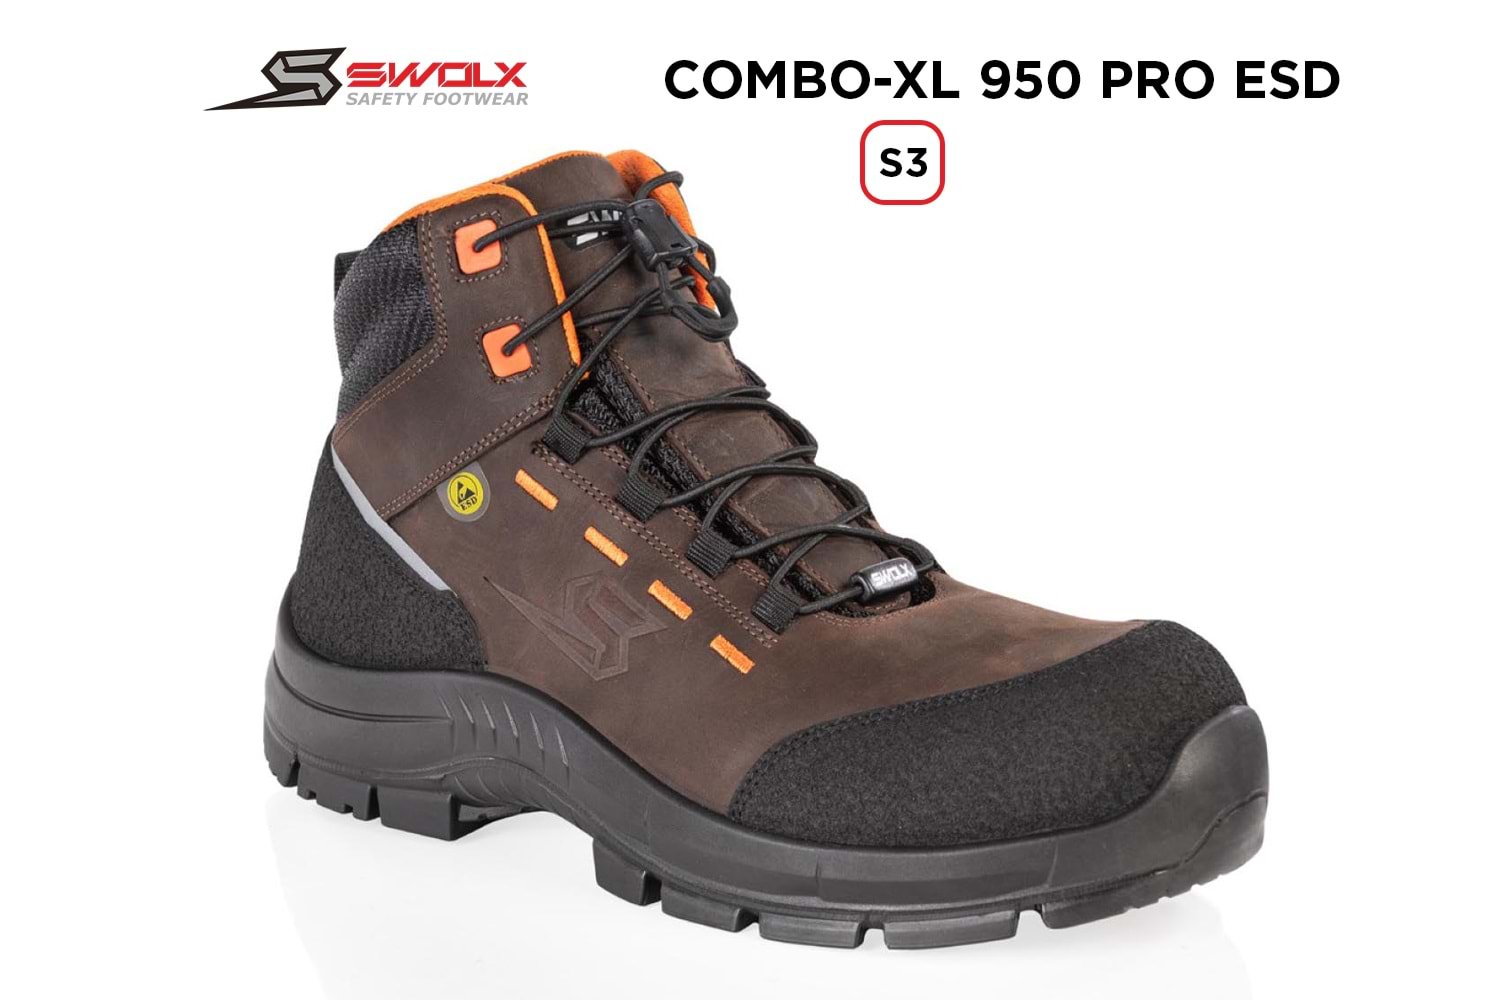 Swolx İş Ayakkabısı - Combo-Xl Pro Esd 950 S3 - 39